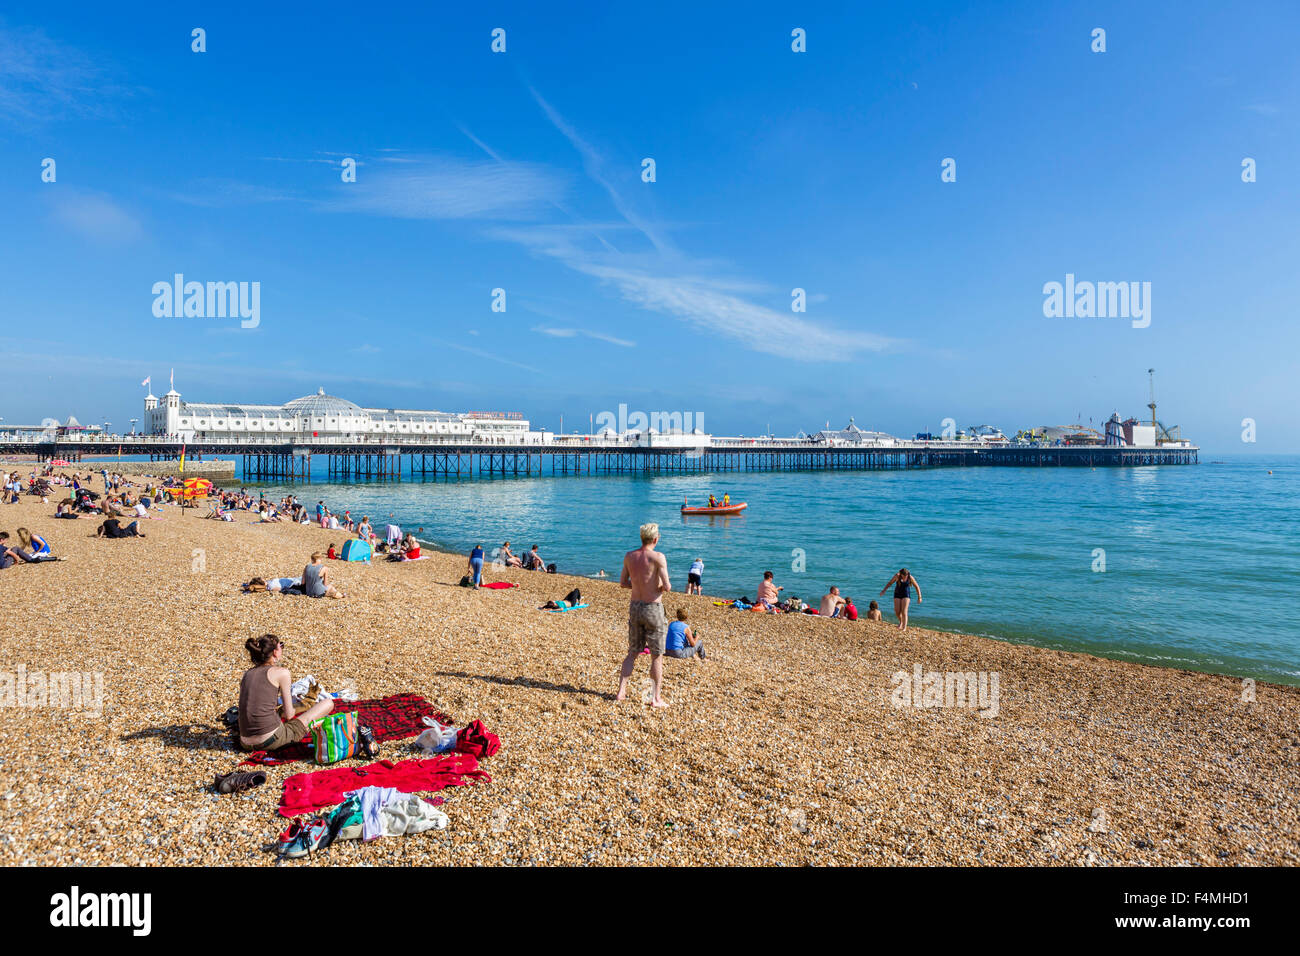 Strand von Brighton, Brighton, Sussex. Der Strand und Pier am späten Nachmittag Sonnenschein, Brighton, East Sussex, England, Großbritannien Stockfoto